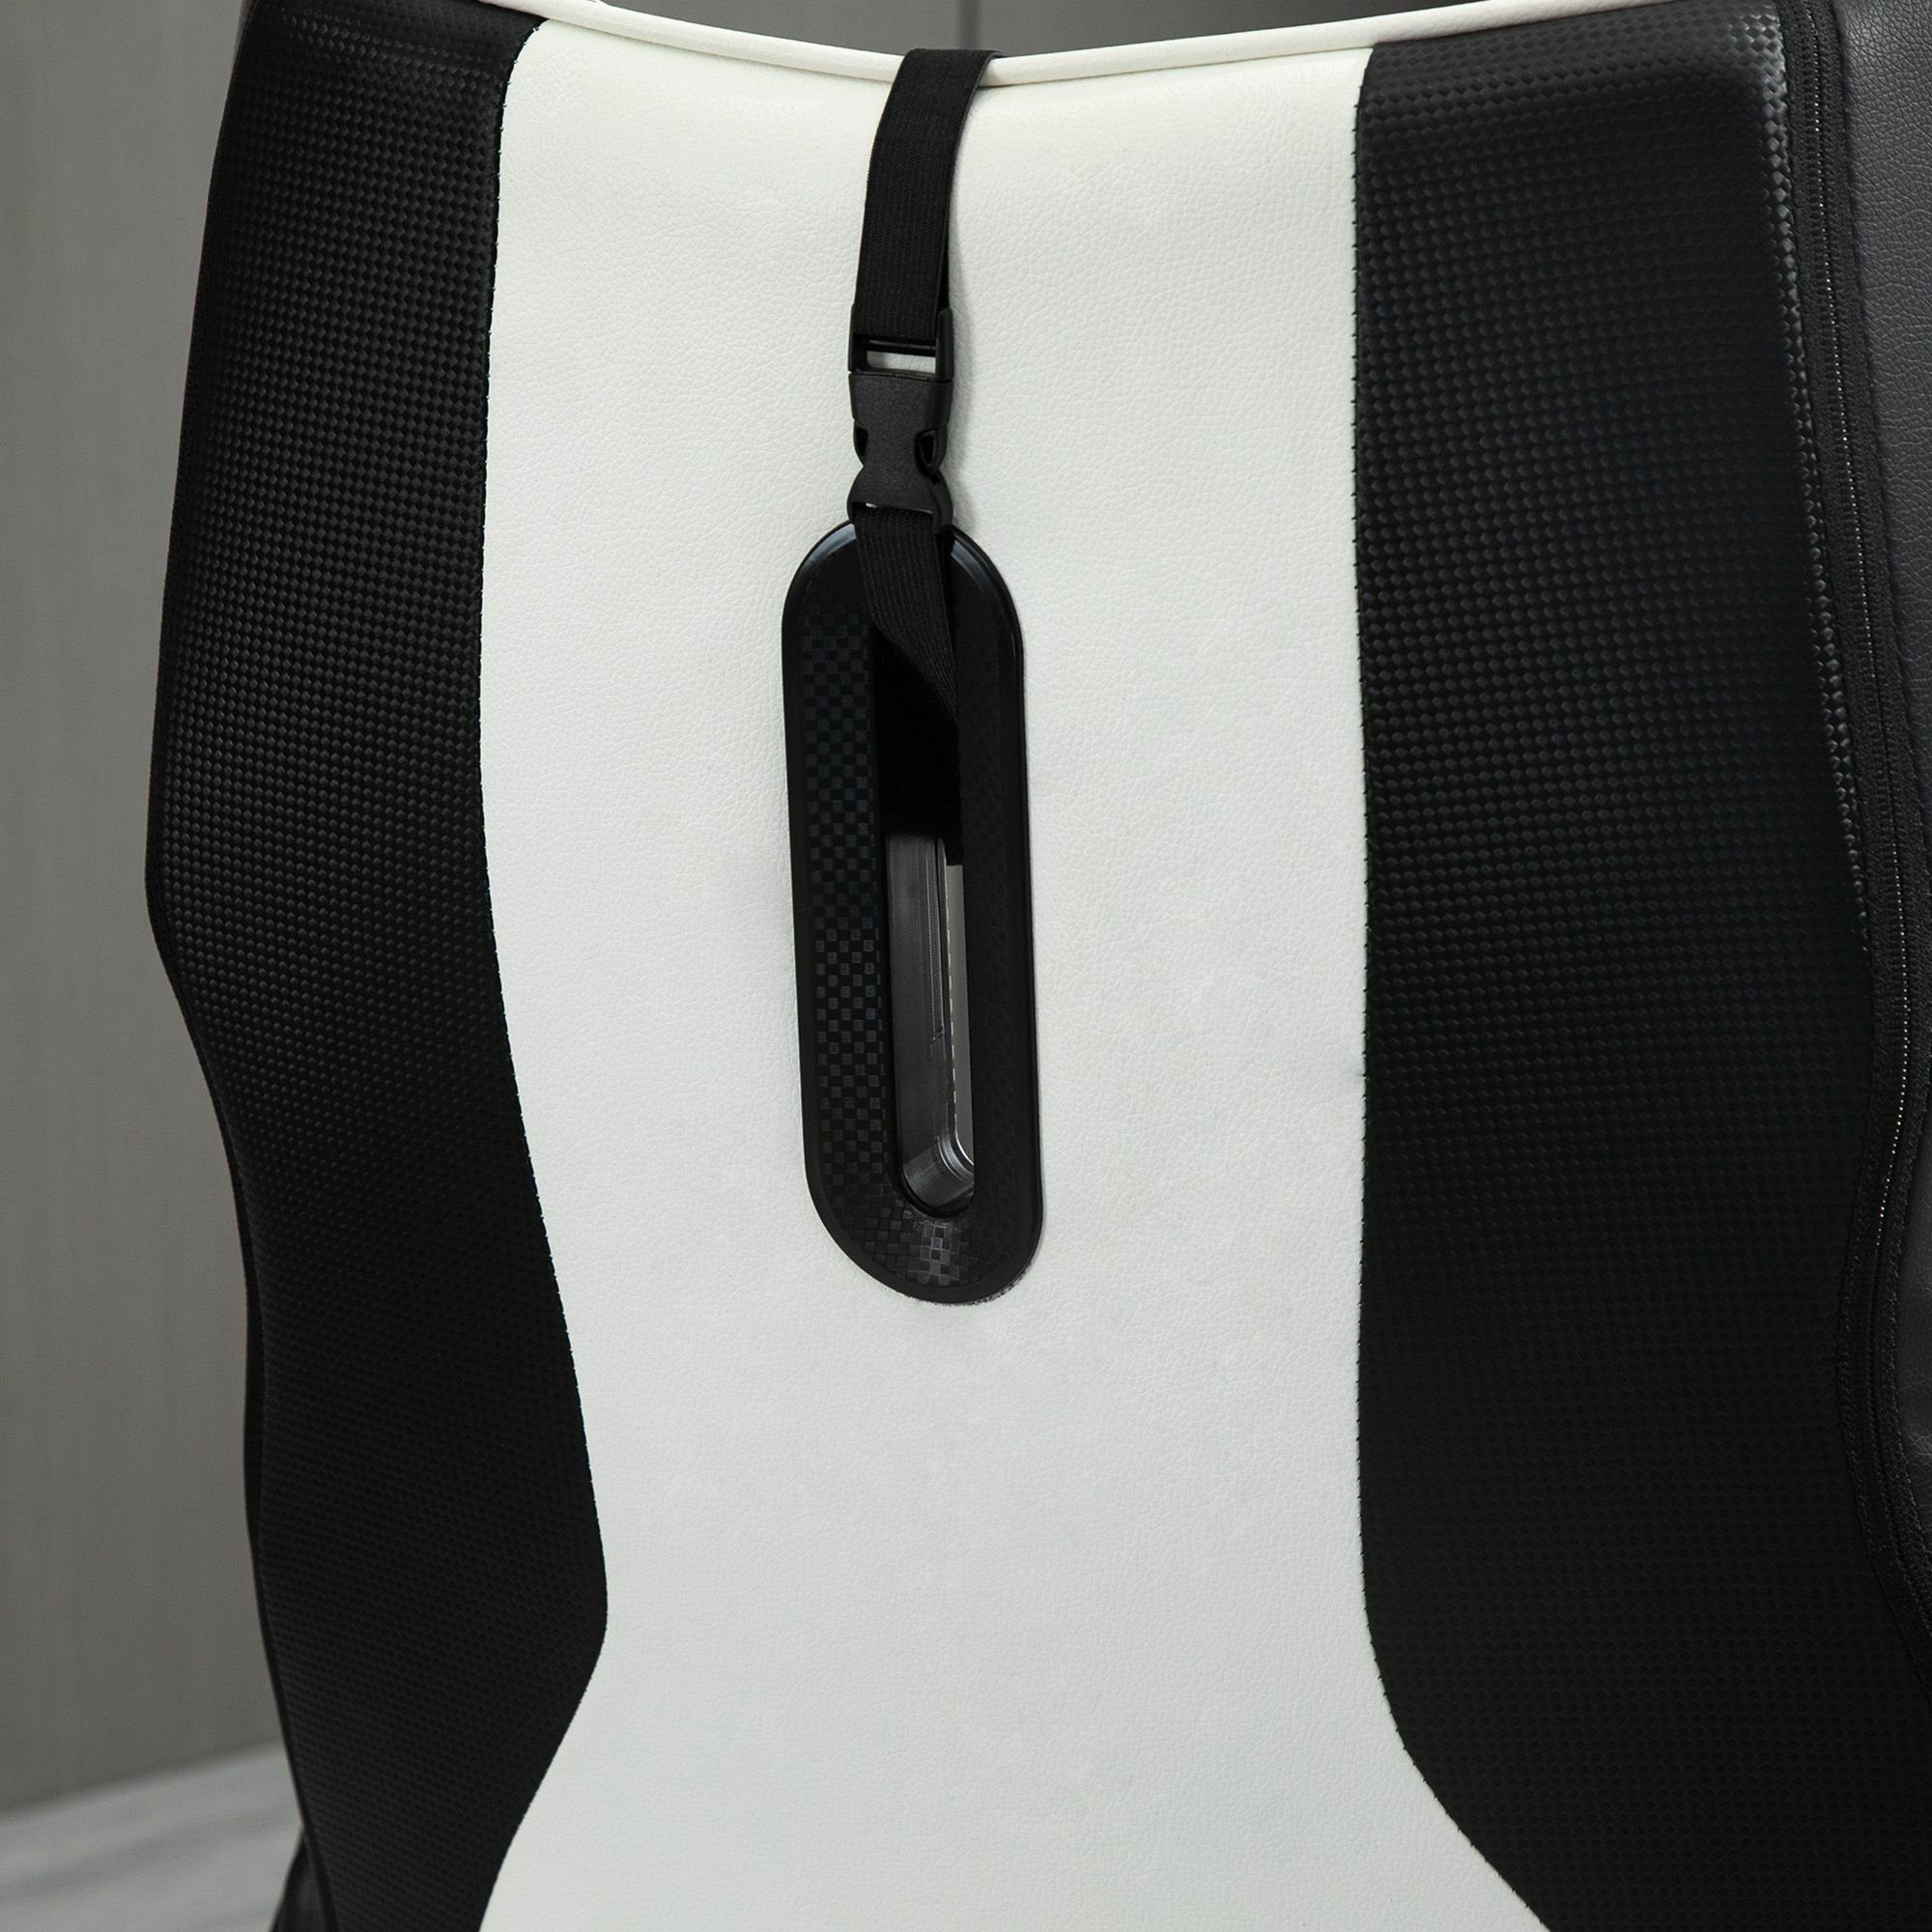 schwarz/weiß Vinsetto Schreibtischstuhl Stuhl ergonomisch Gaming | schwarz/weiß